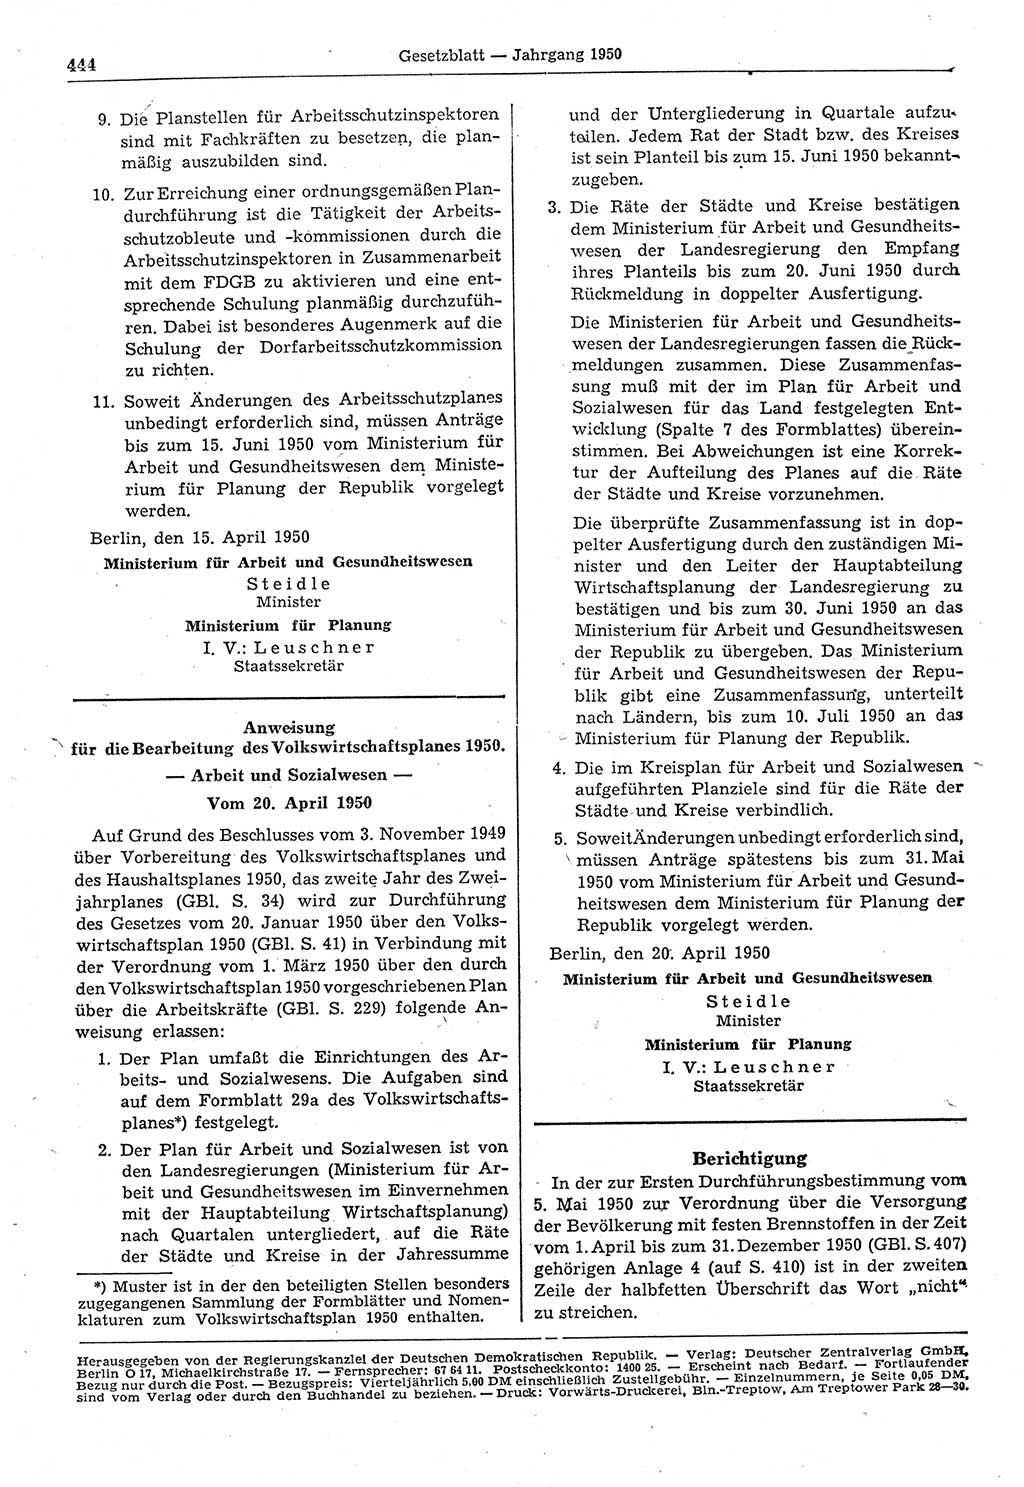 Gesetzblatt (GBl.) der Deutschen Demokratischen Republik (DDR) 1950, Seite 444 (GBl. DDR 1950, S. 444)